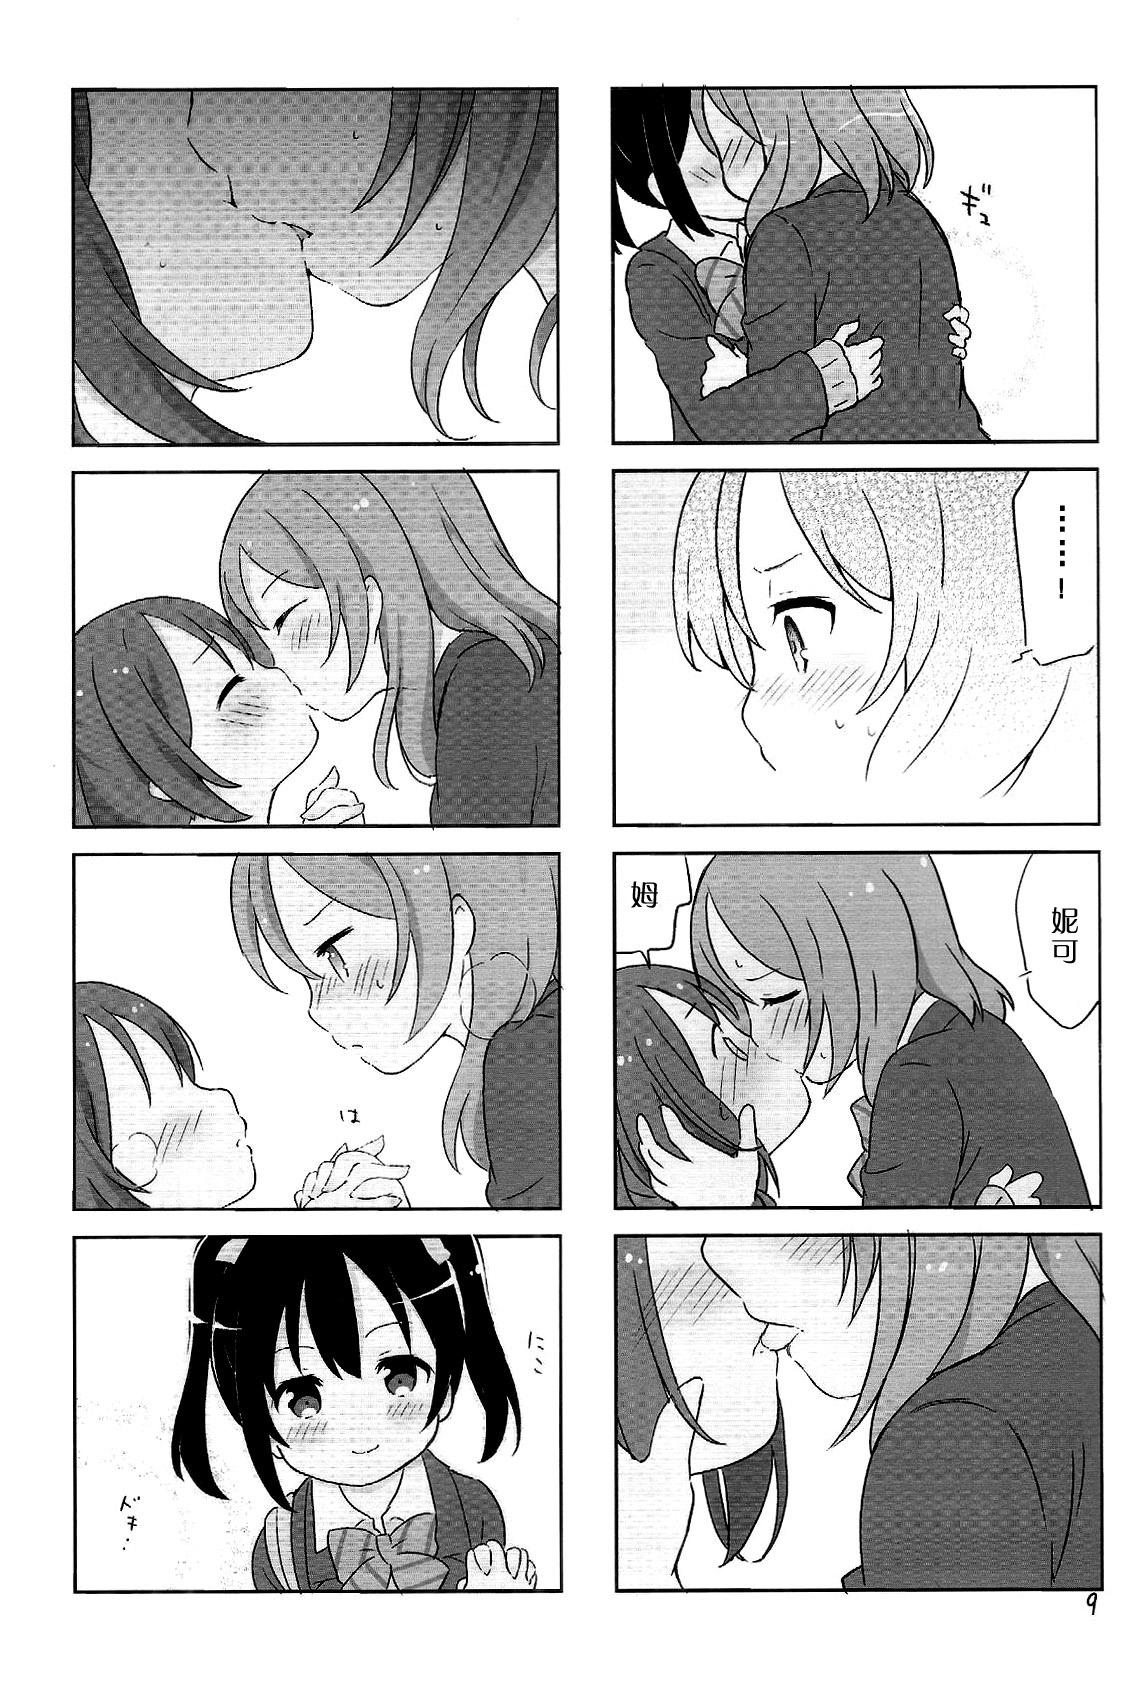 NicoMaki + Kiss 7